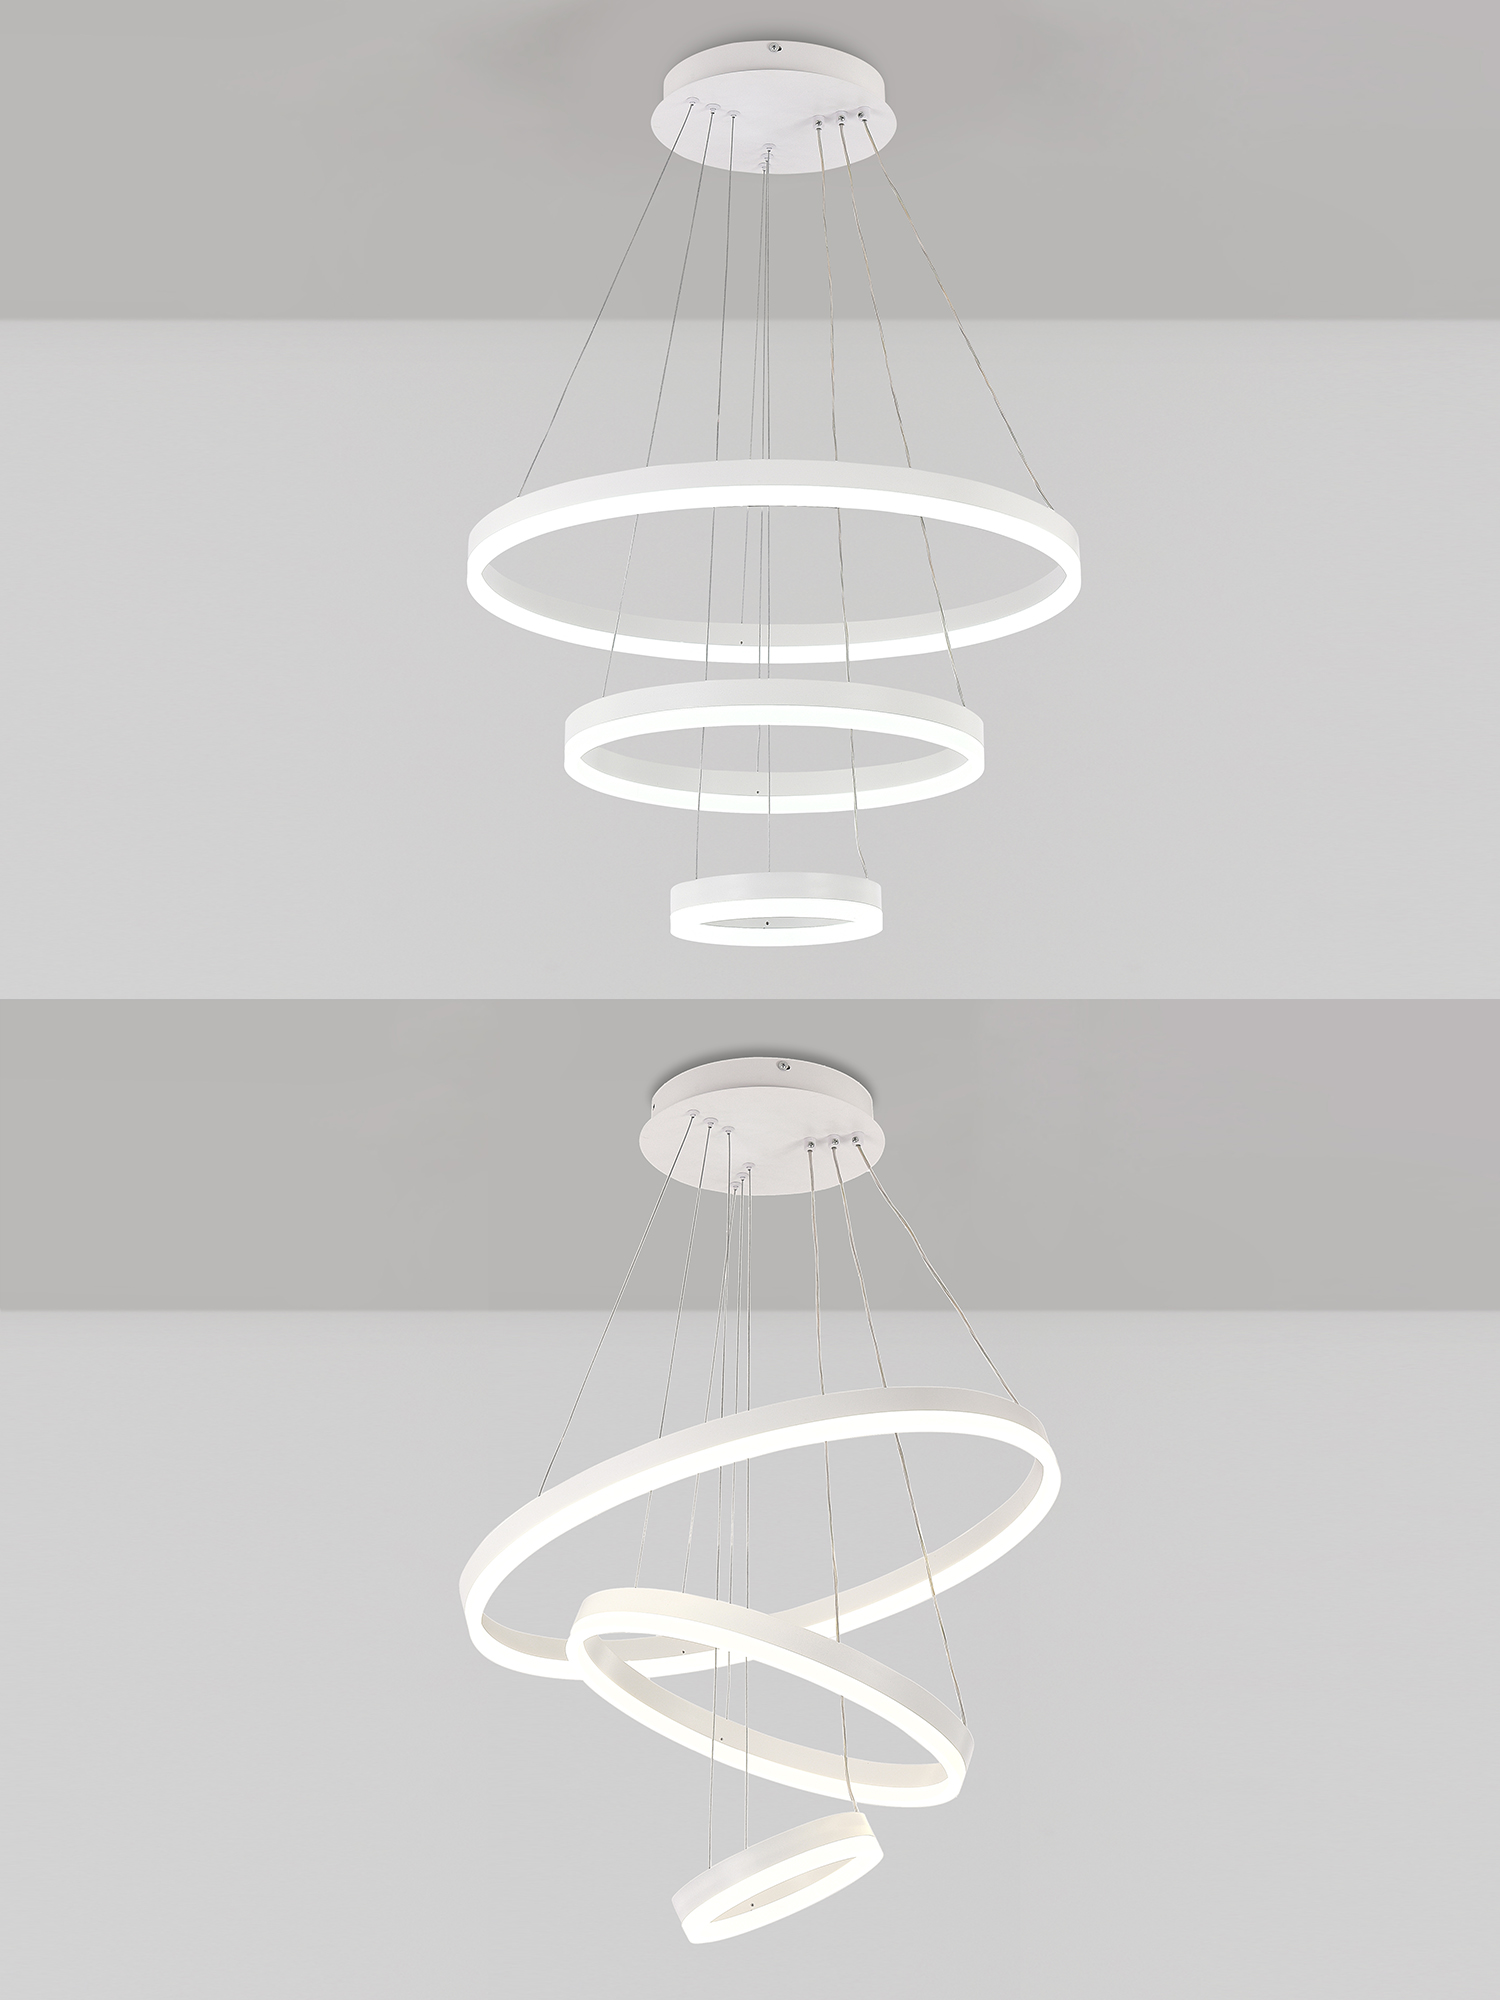 Светодиодный светильник NATALI KOVALTSEVA люстра тройной нимб 160W белый LED - фото 2